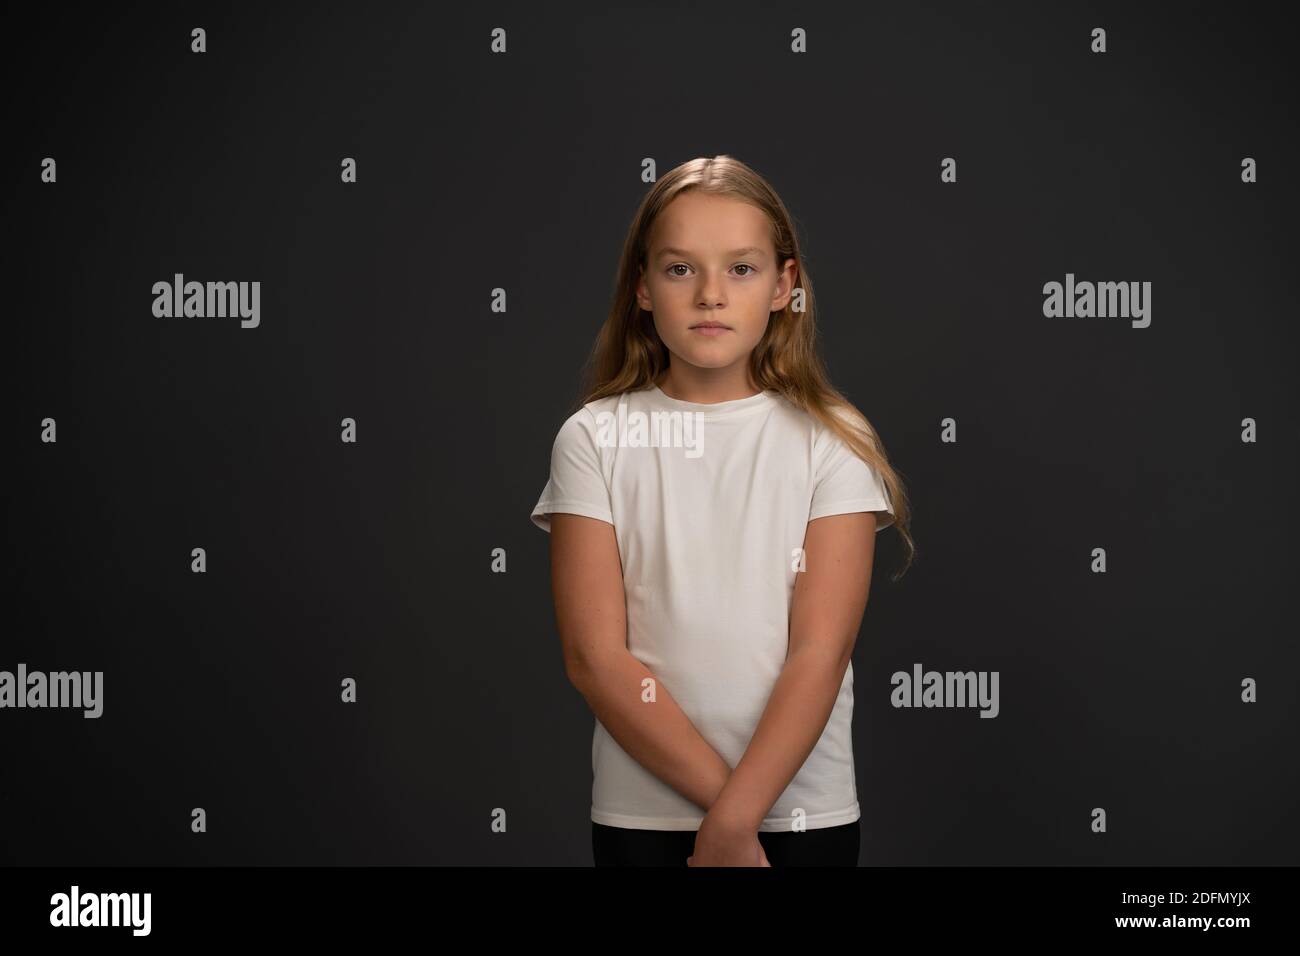 Kleines Mädchen steht und schaut fragwürdig oder frustriert auf die Kamera Tragen weißes T-Shirt isoliert auf dunkelgrauem oder schwarzem Hintergrund Stockfoto